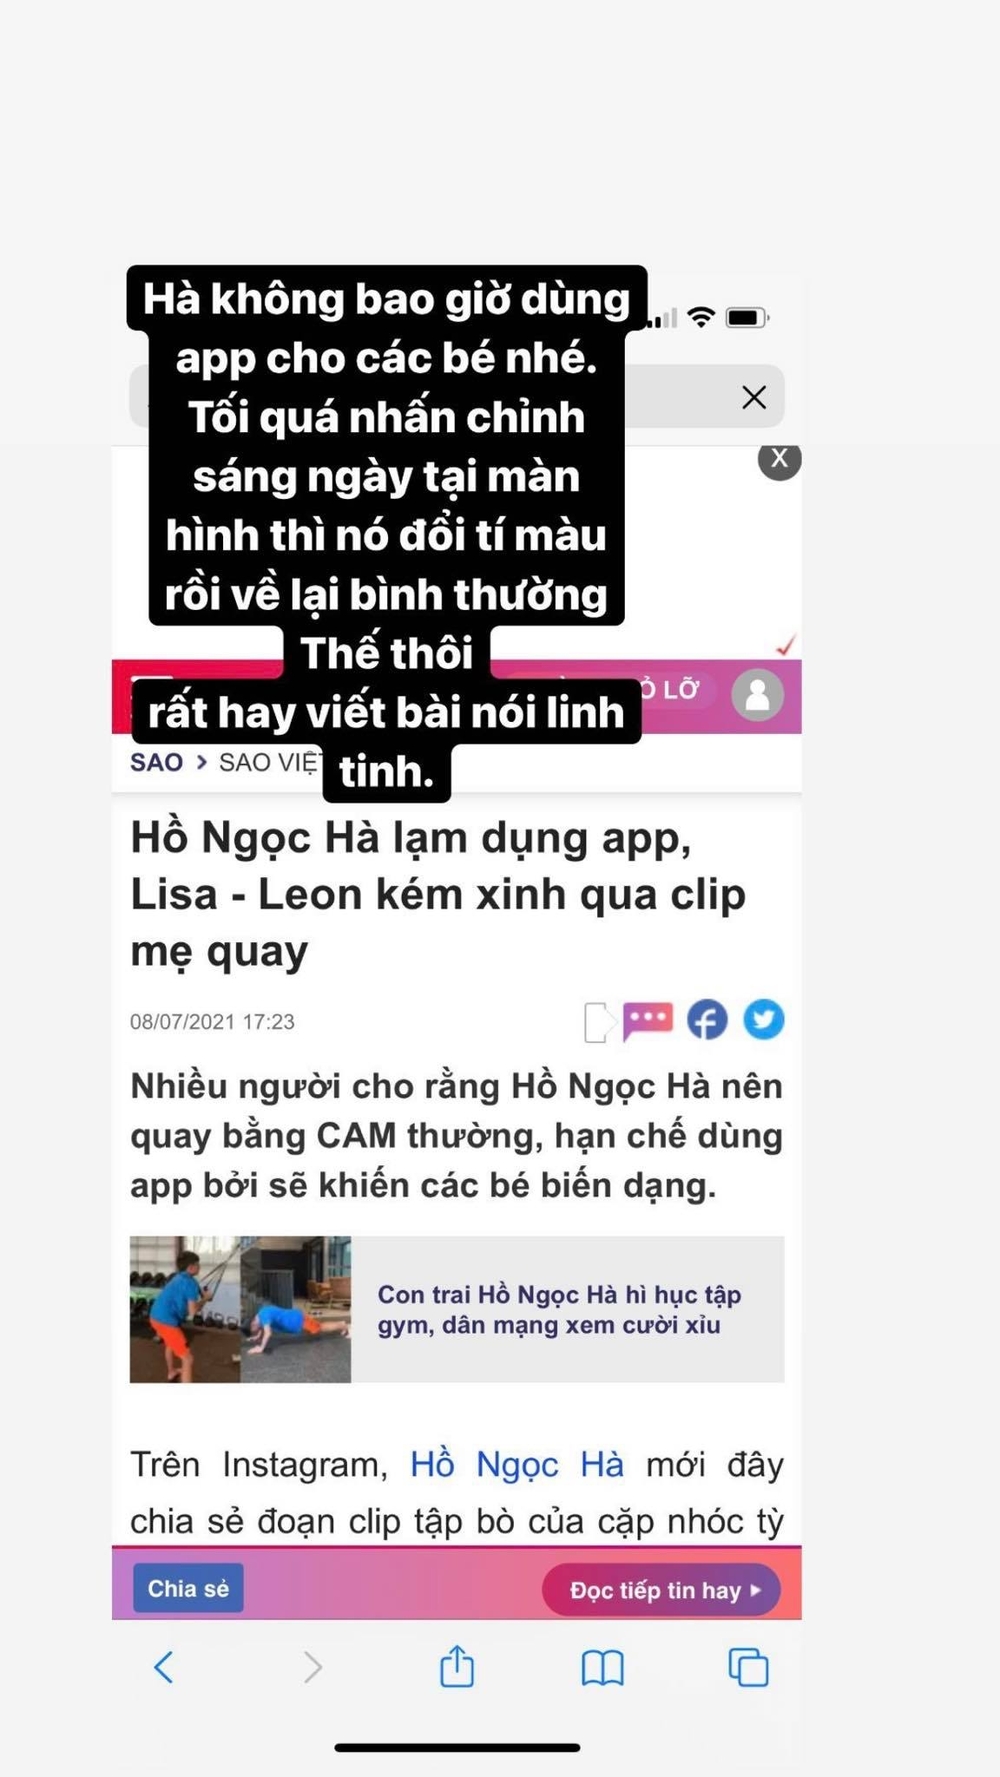 Hồ Ngọc Hà lên tiếng khi bị nói lạm dụng app chụp ảnh cho con - Ảnh 3